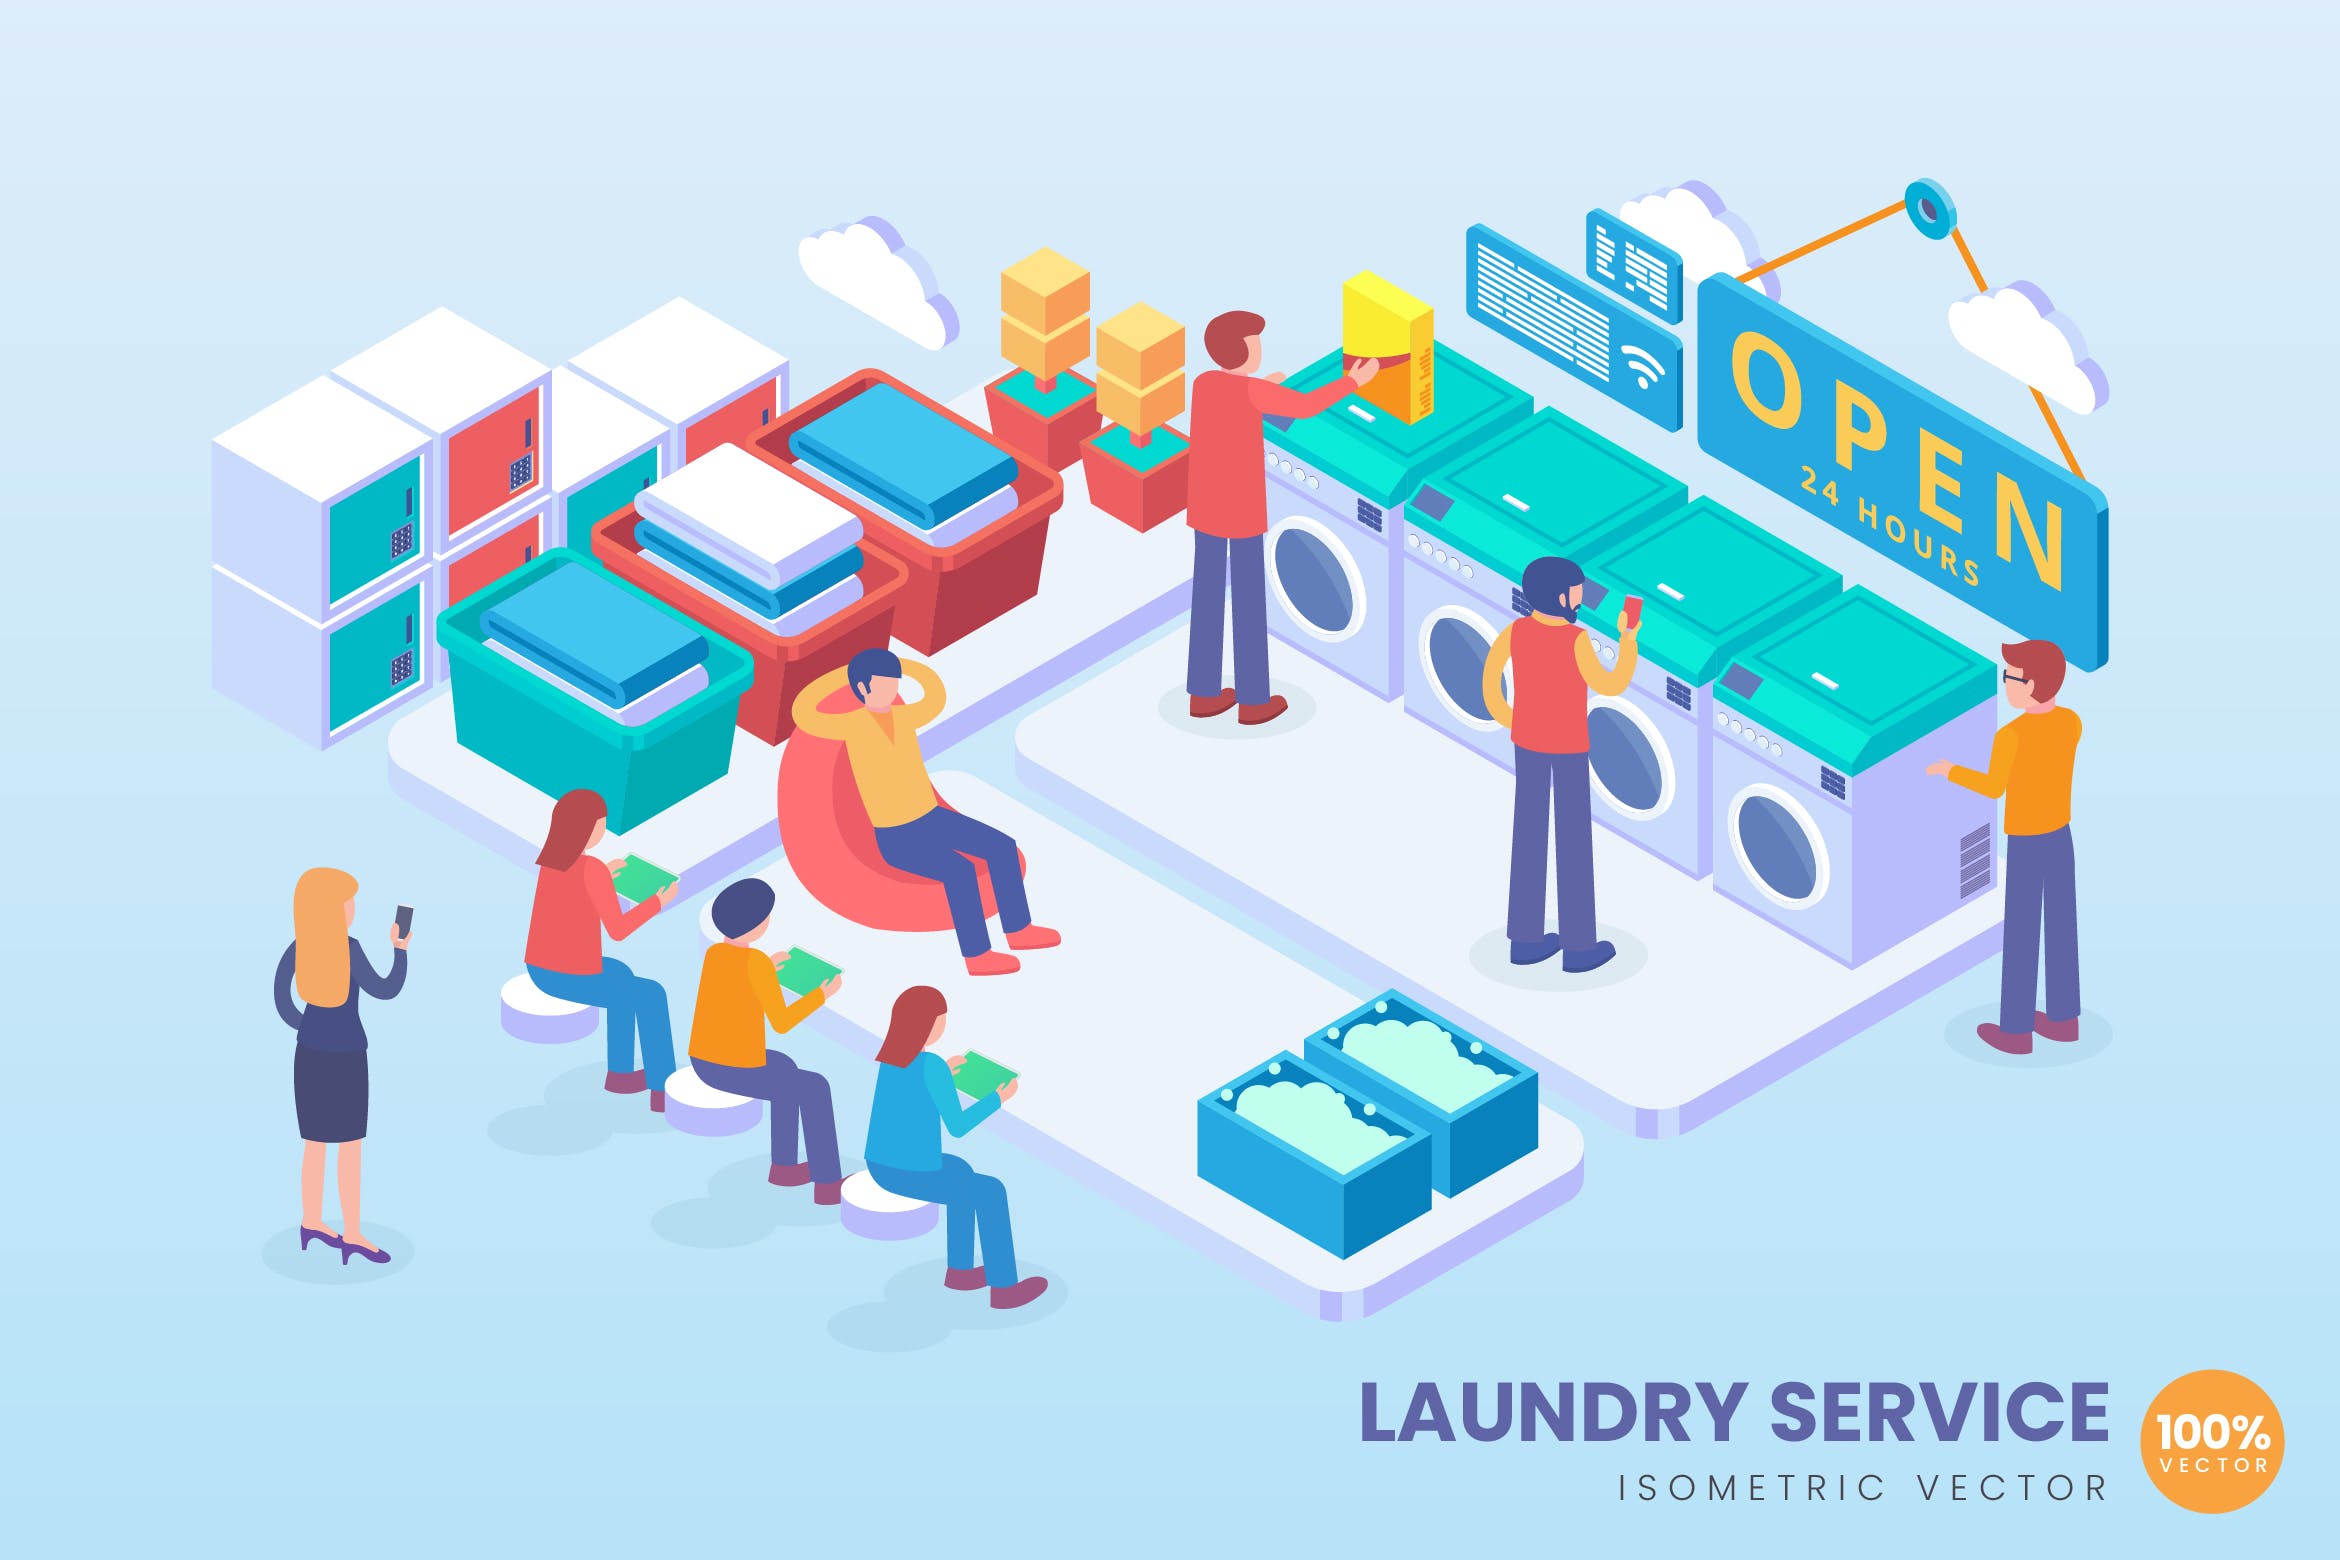 洗衣自助服务主题等距矢量概念插画素材 Isometric Laundry Service Vector Concept插图